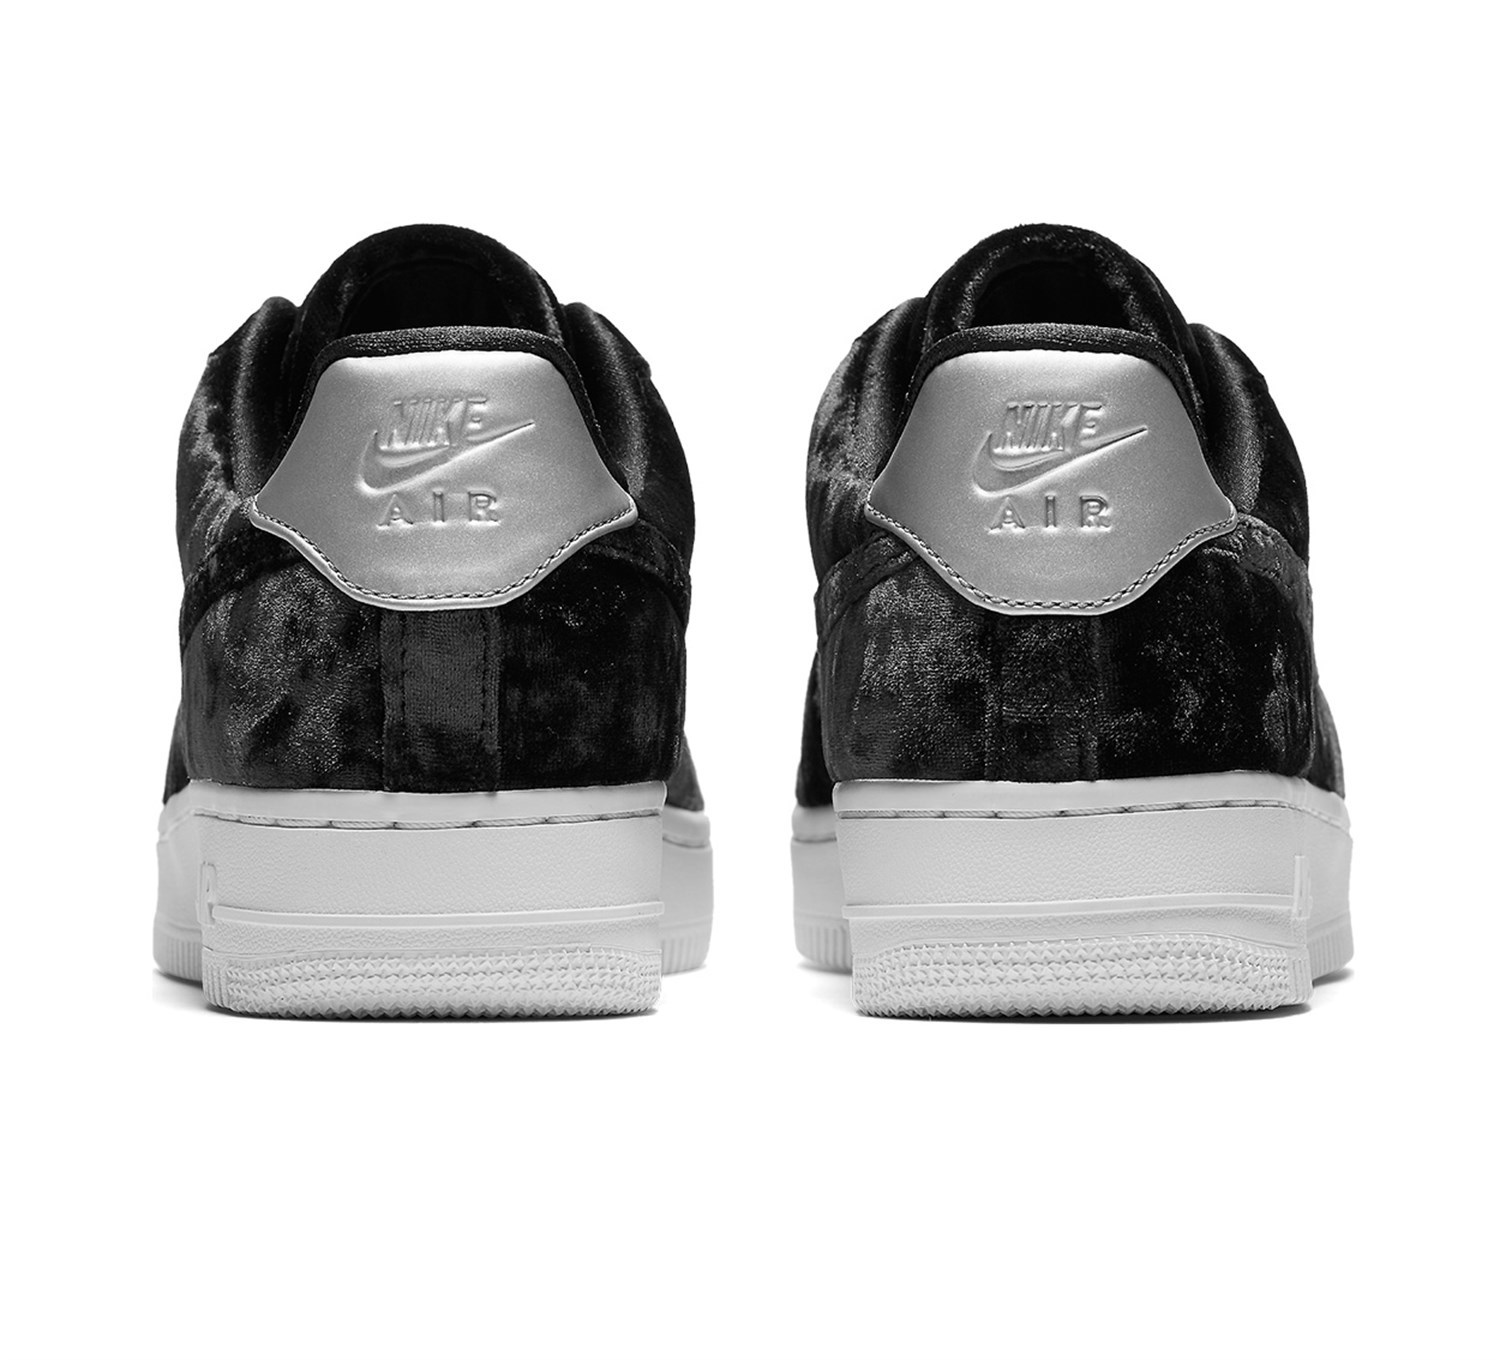 Nike Air Force 1 07 Premium Sneaker Kadın Ayakkabı 896185-003